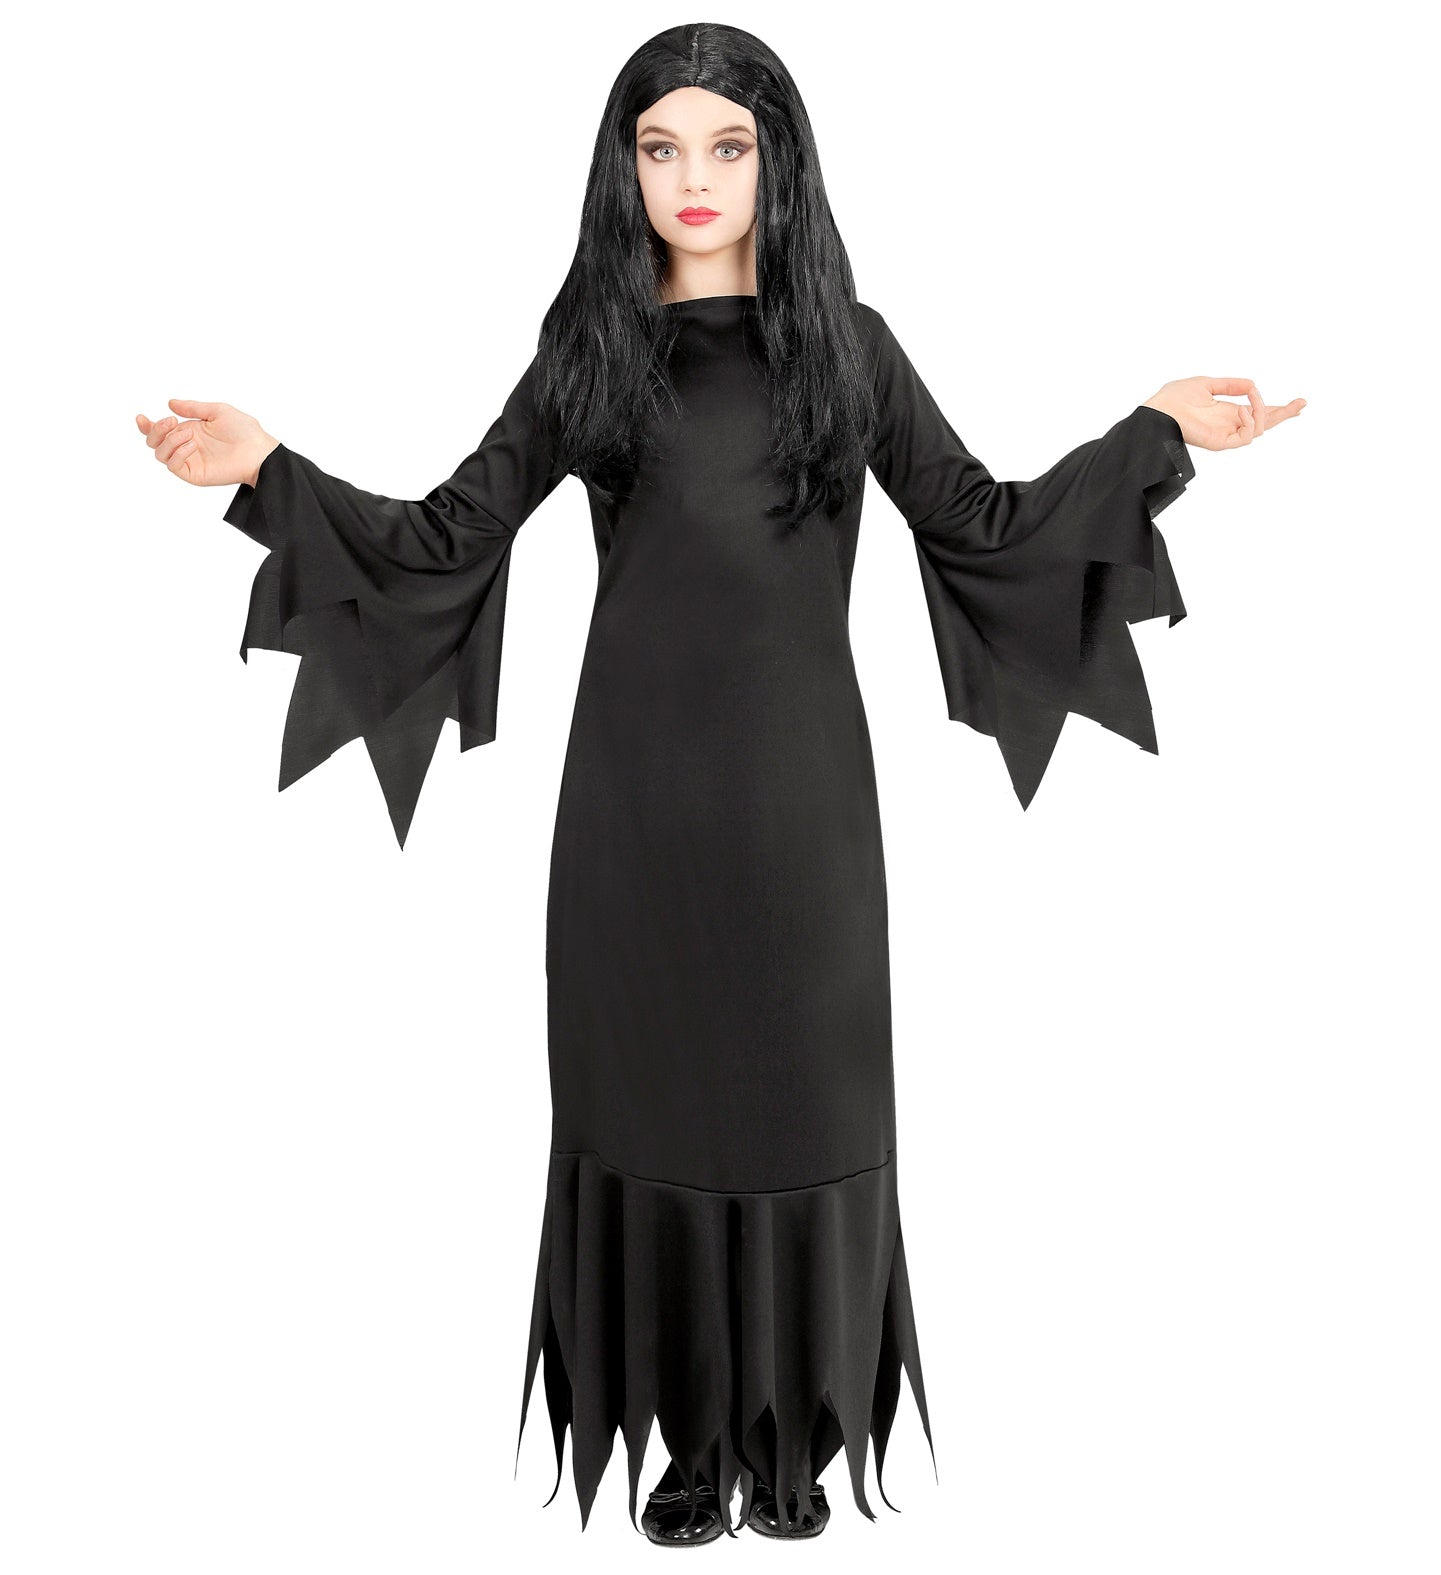 Morticia Addams Costume Child's